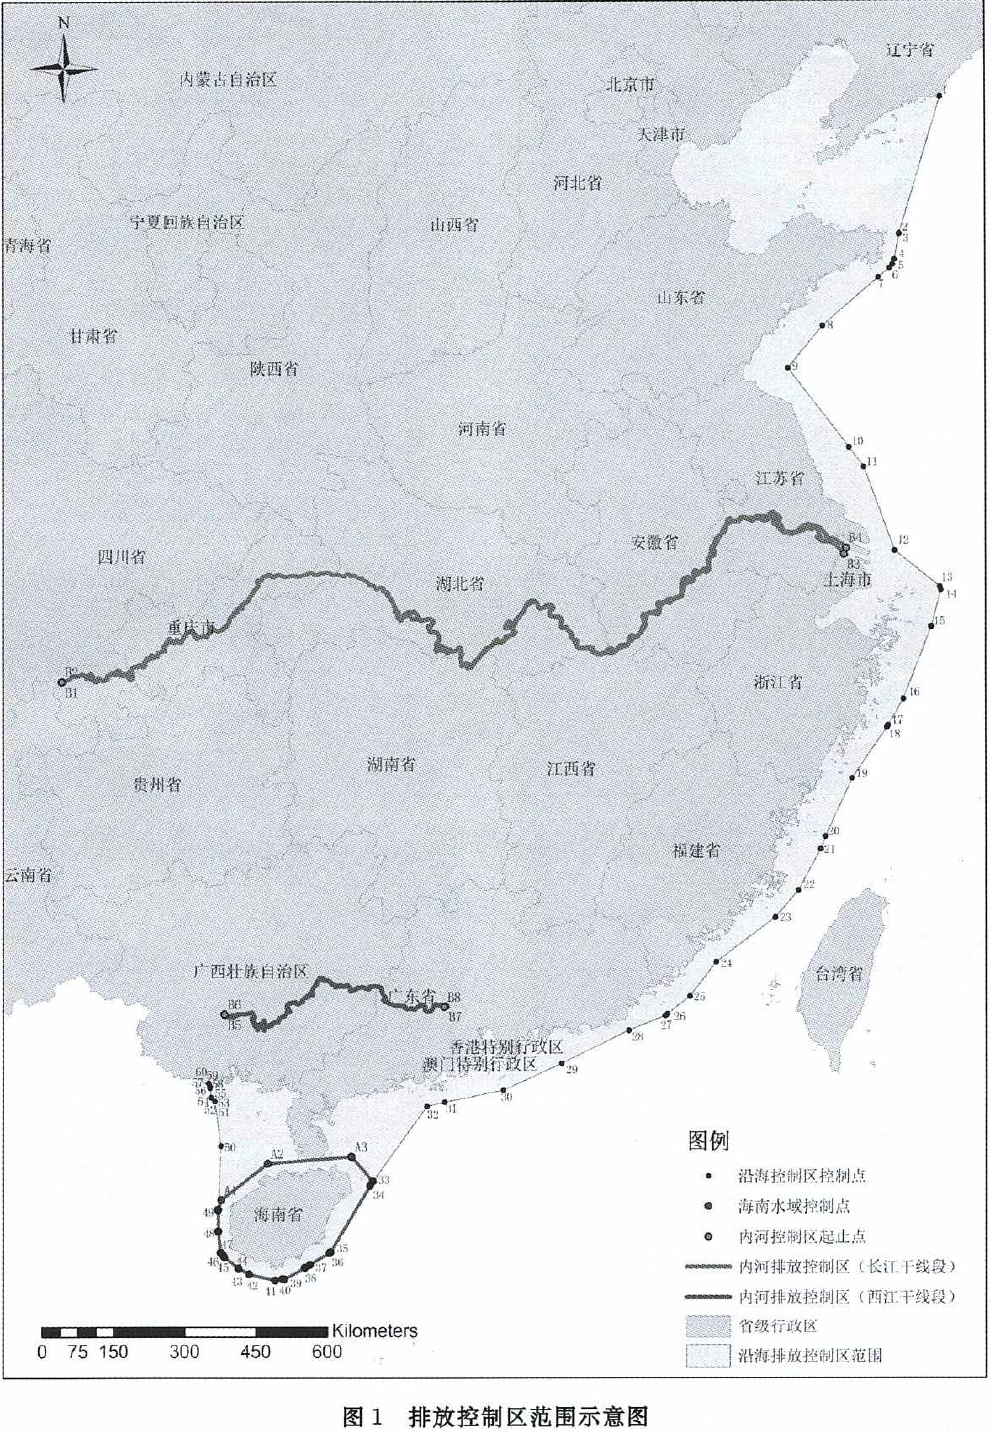 交通部公布船舶大气污染物排放控制区：长江、西江及沿海纳入